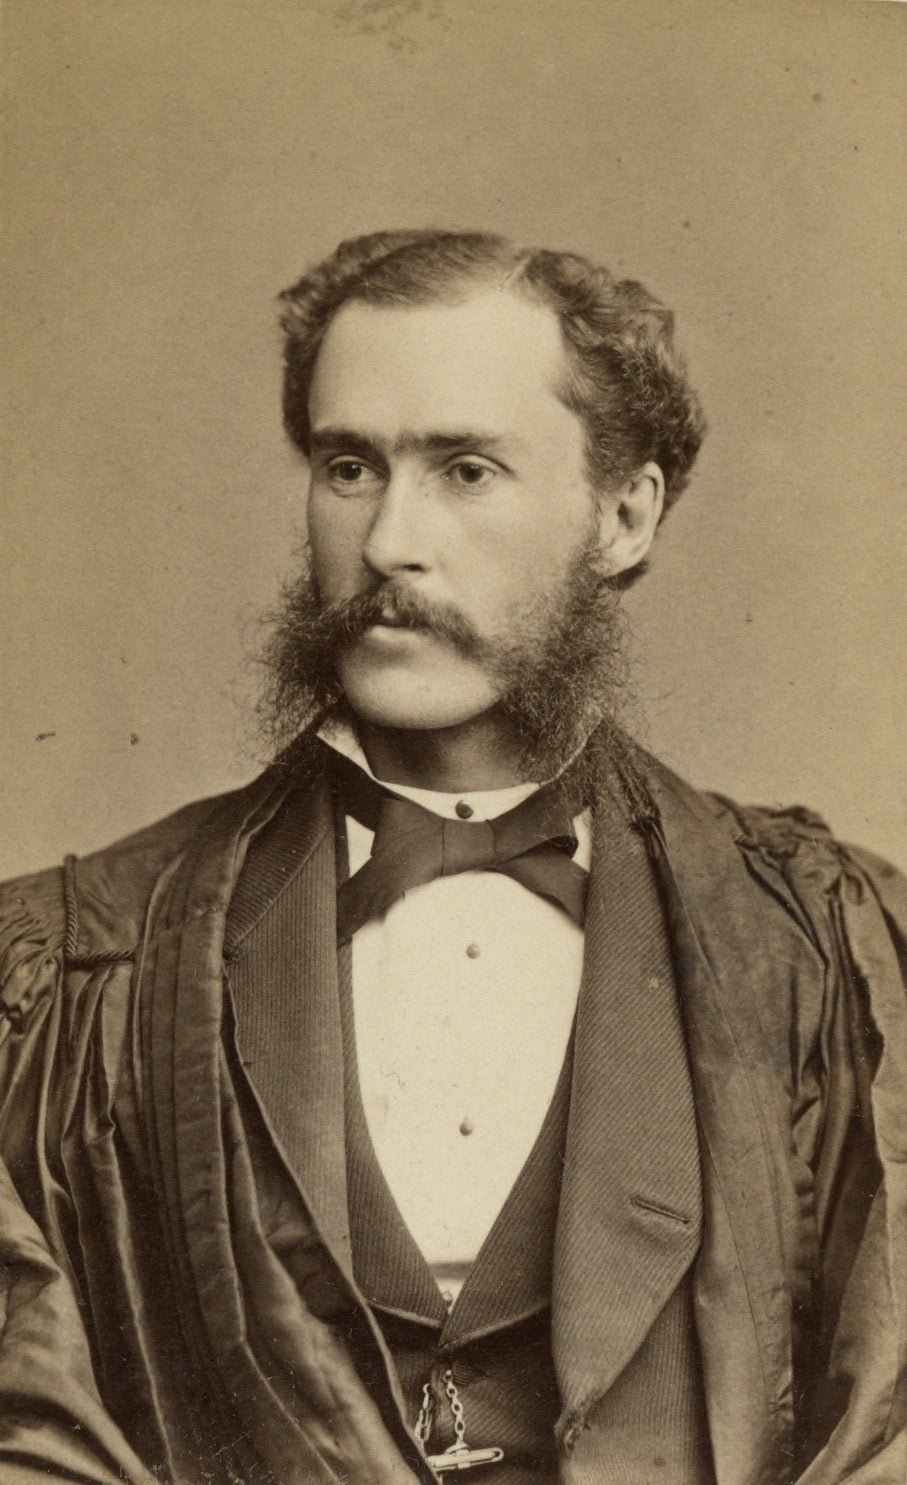 Lewis Muhlenberg Haupt, c. 1880